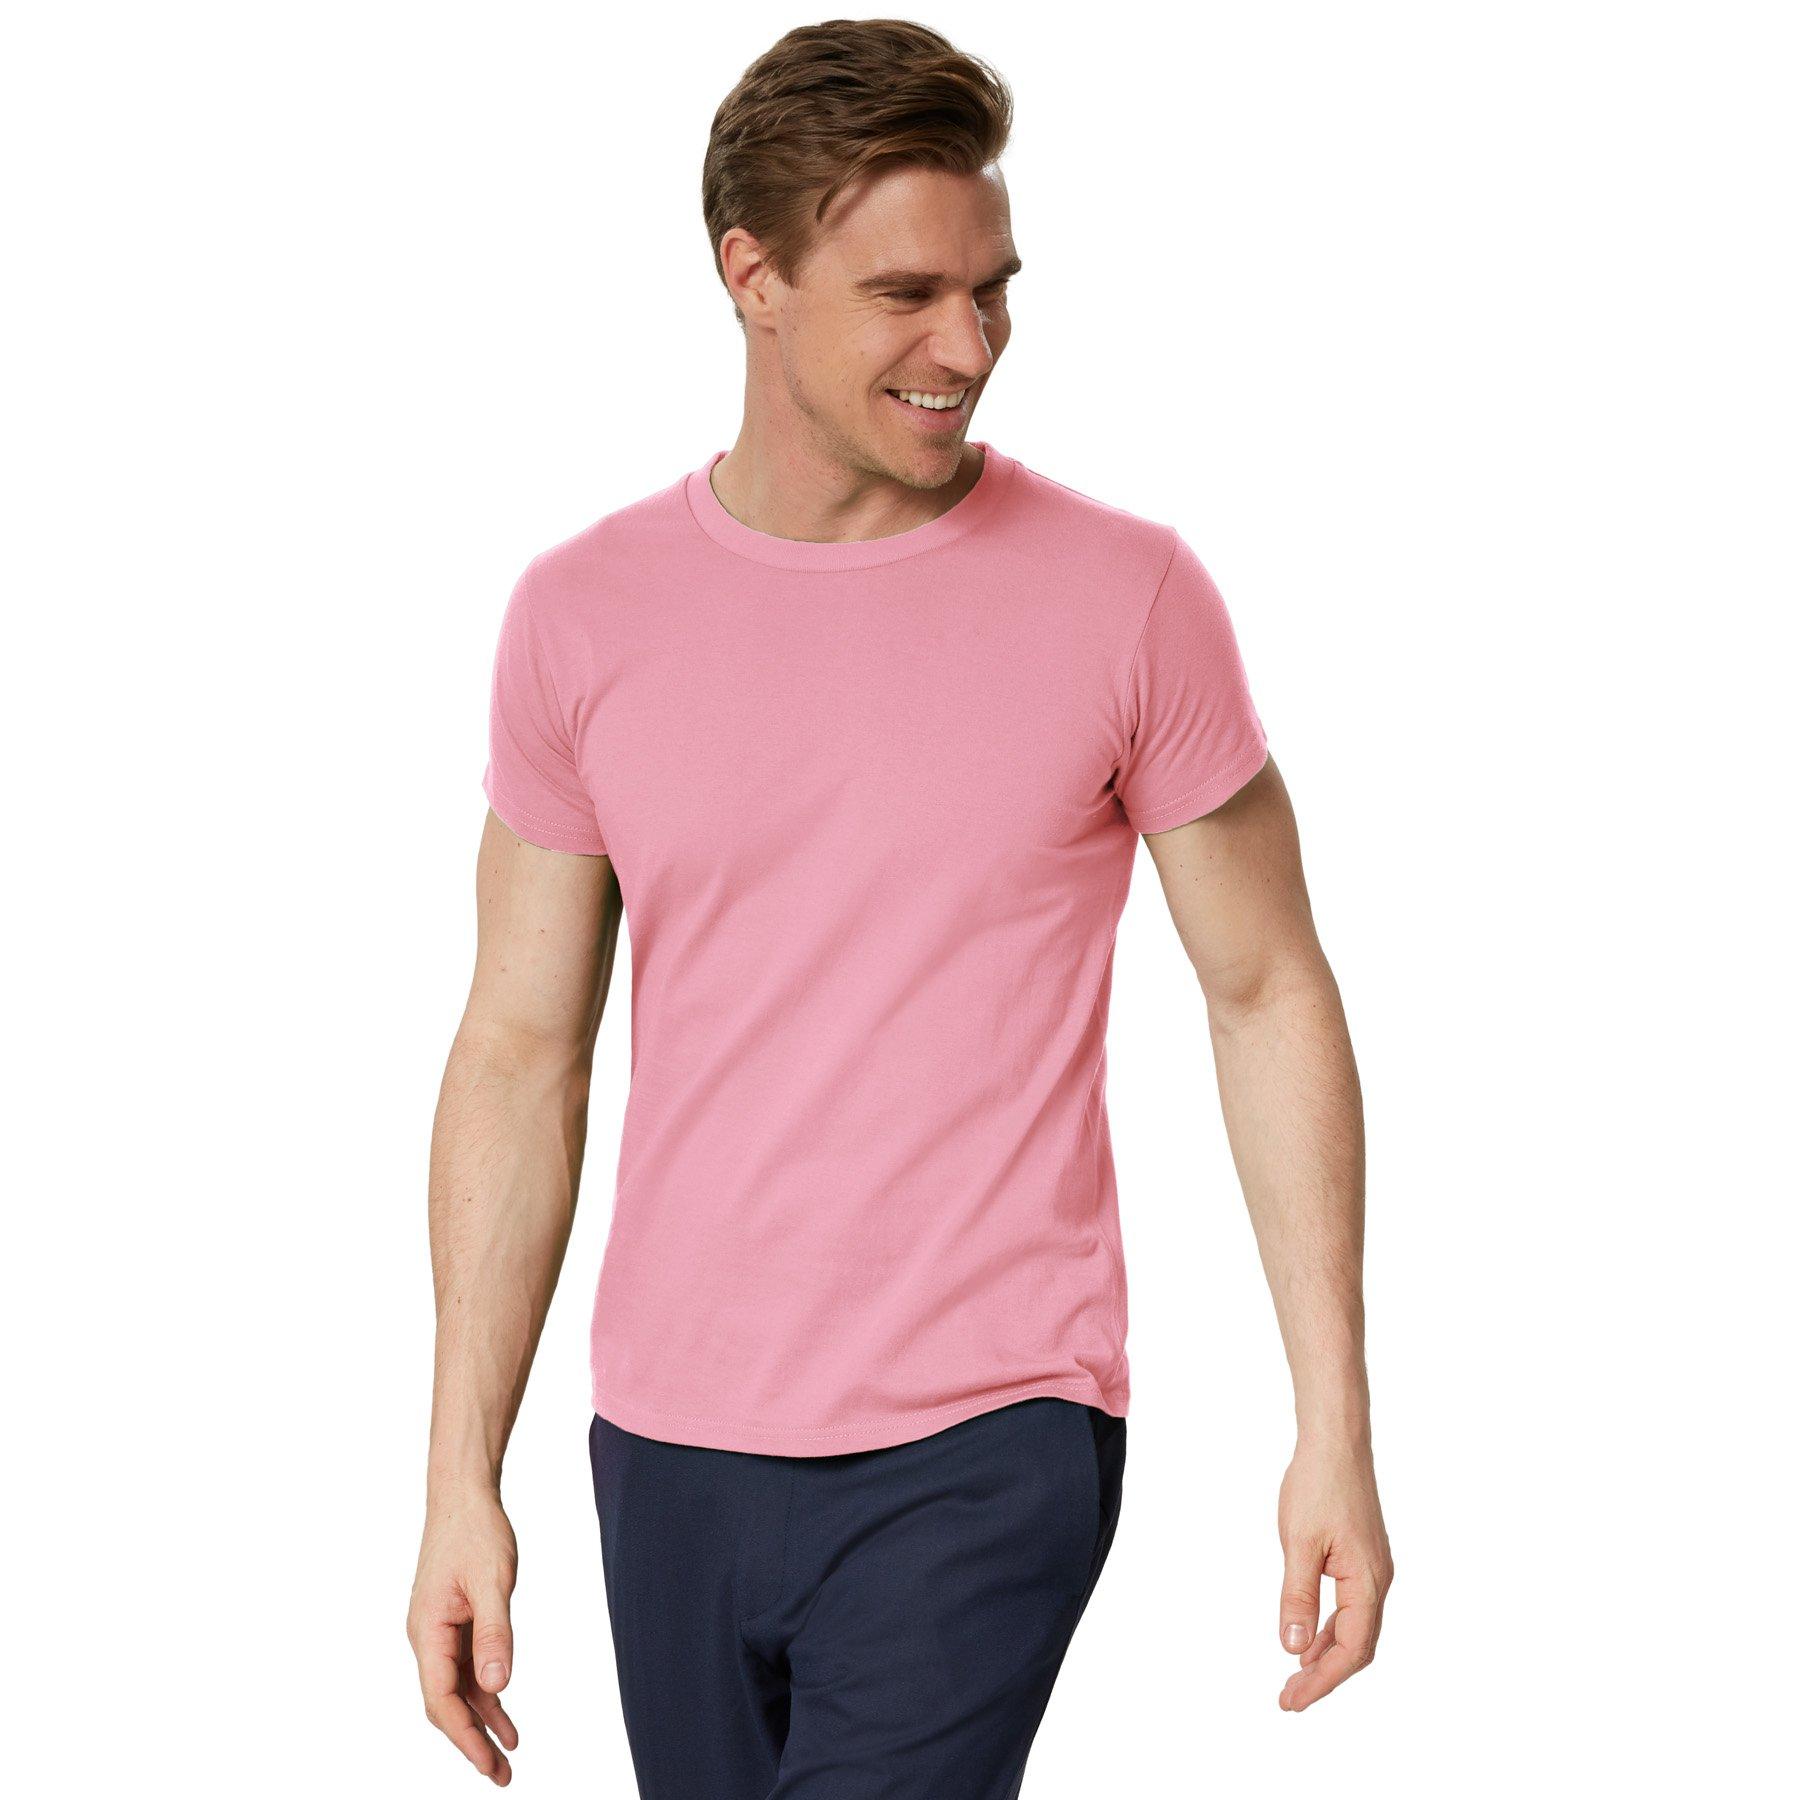 T-shirt Männer Herren Rosa XL von Tectake